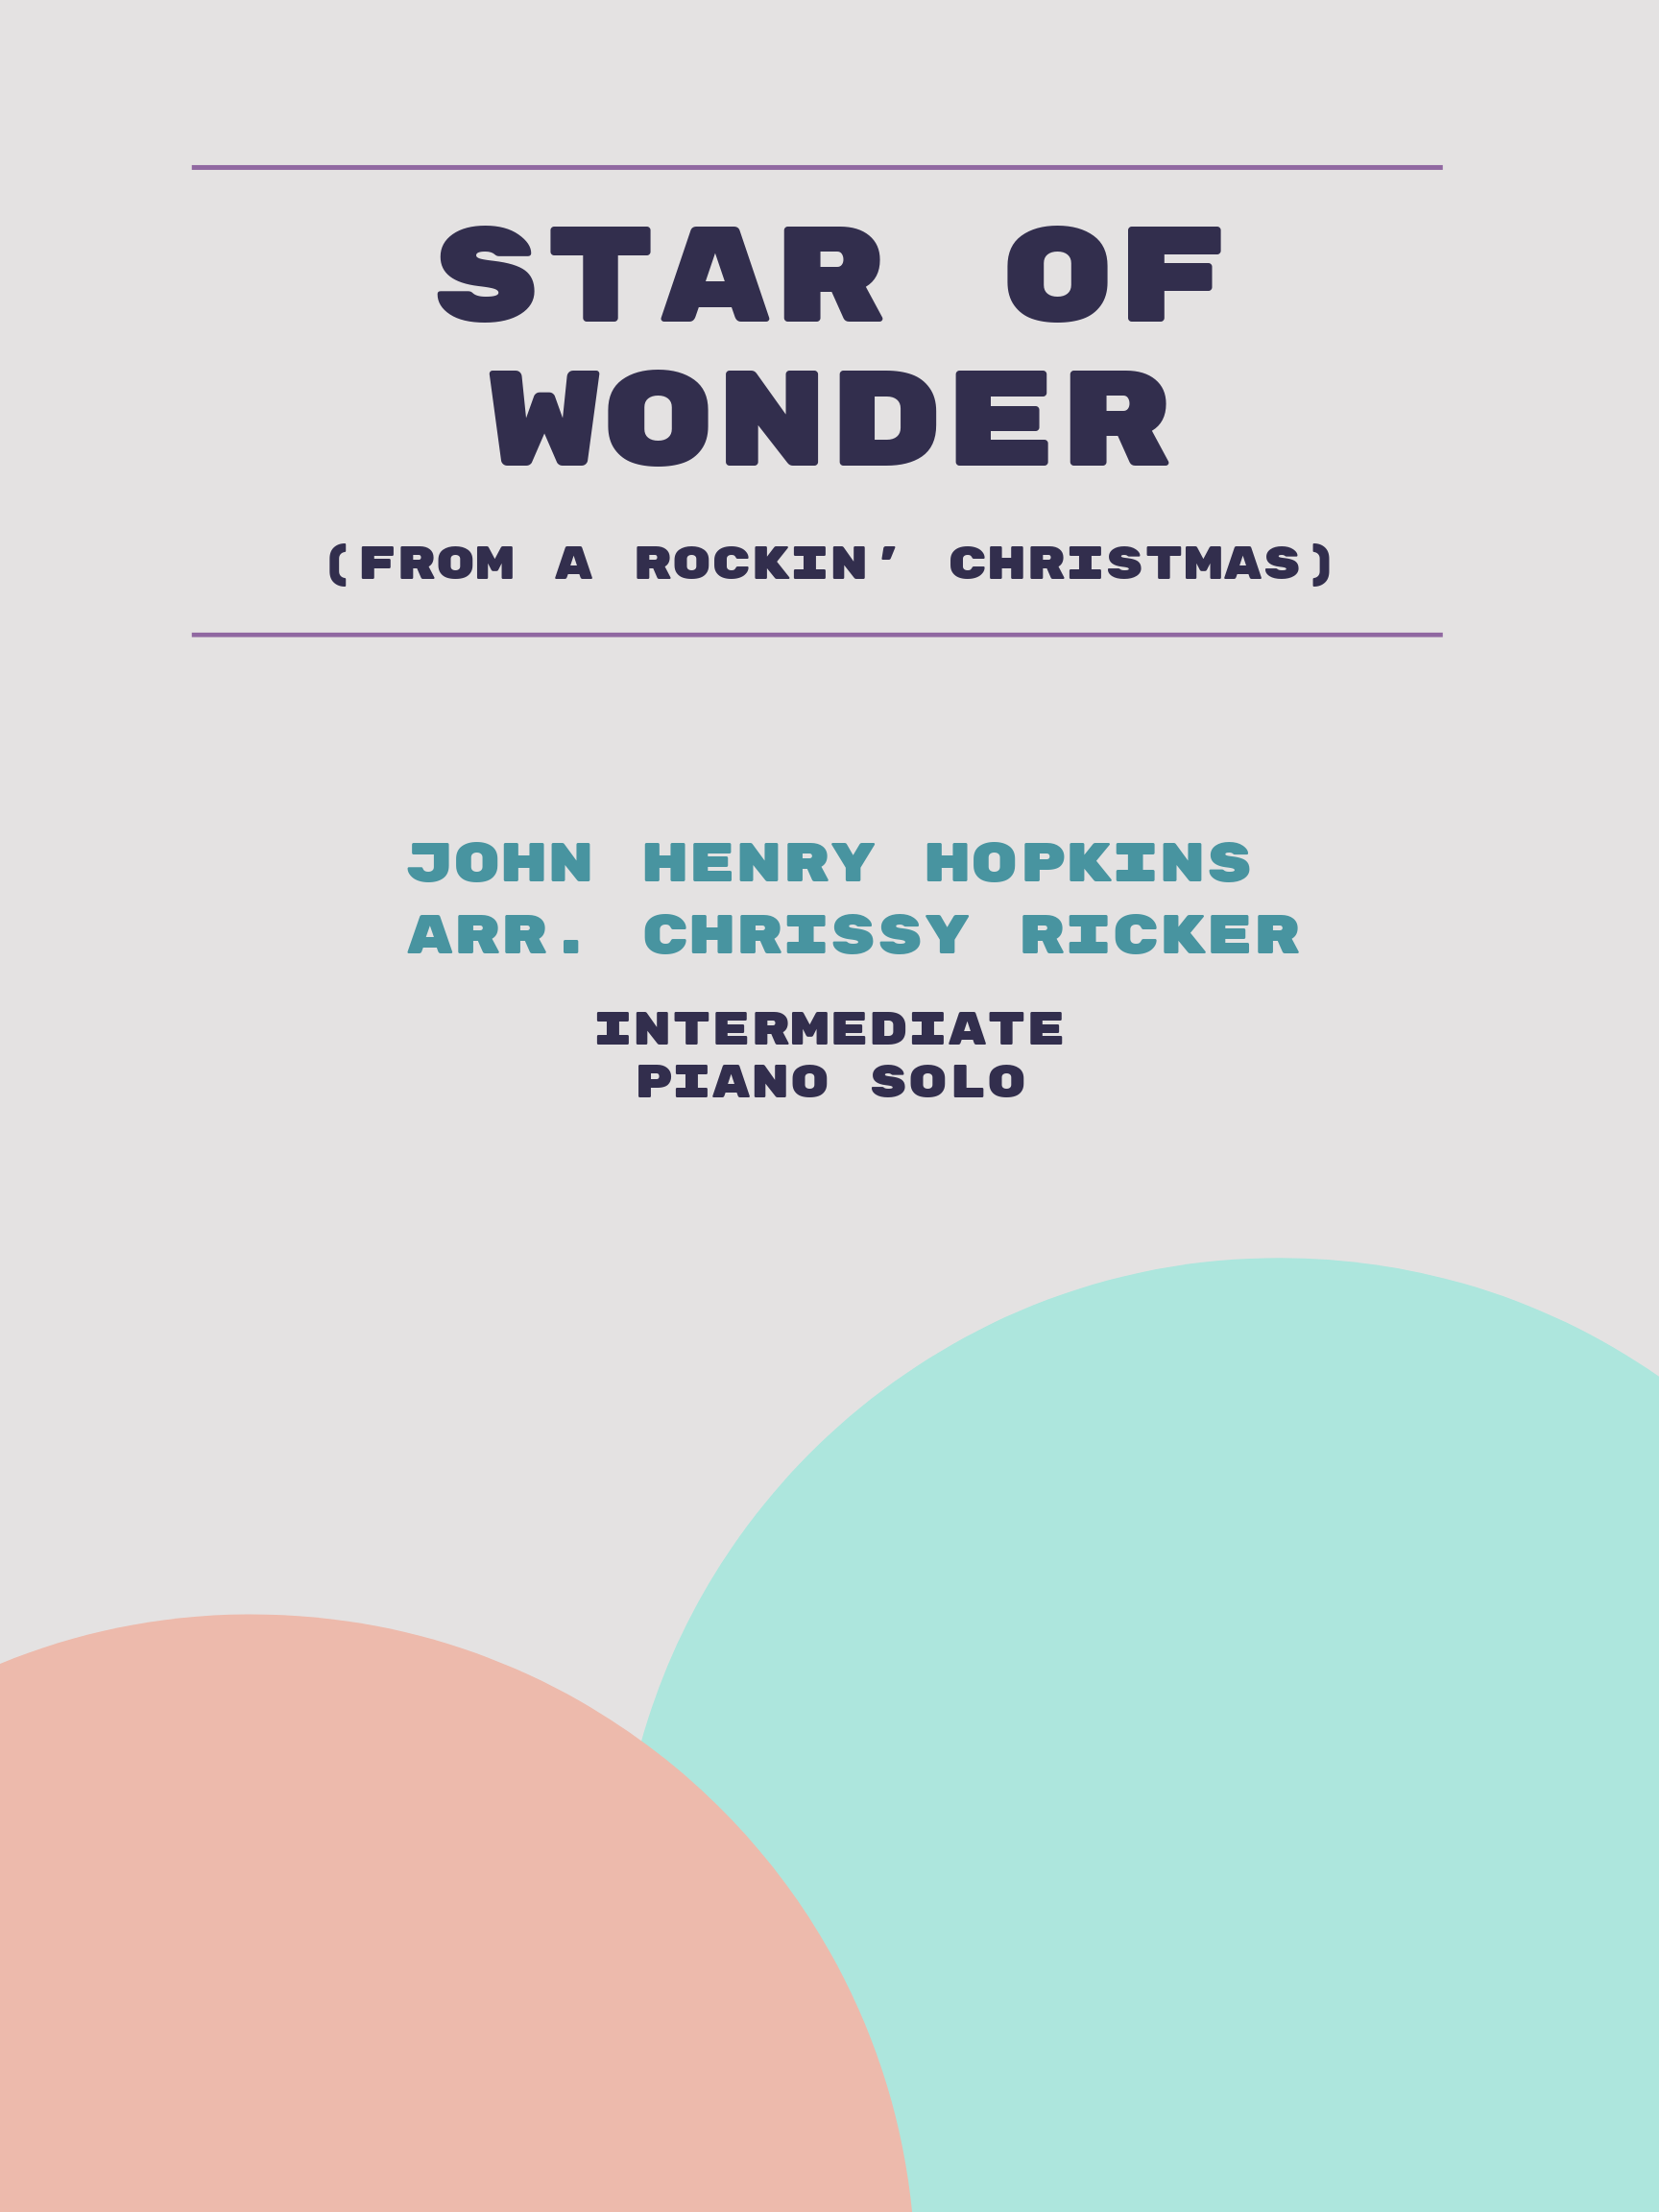 Star of Wonder by John Henry Hopkins